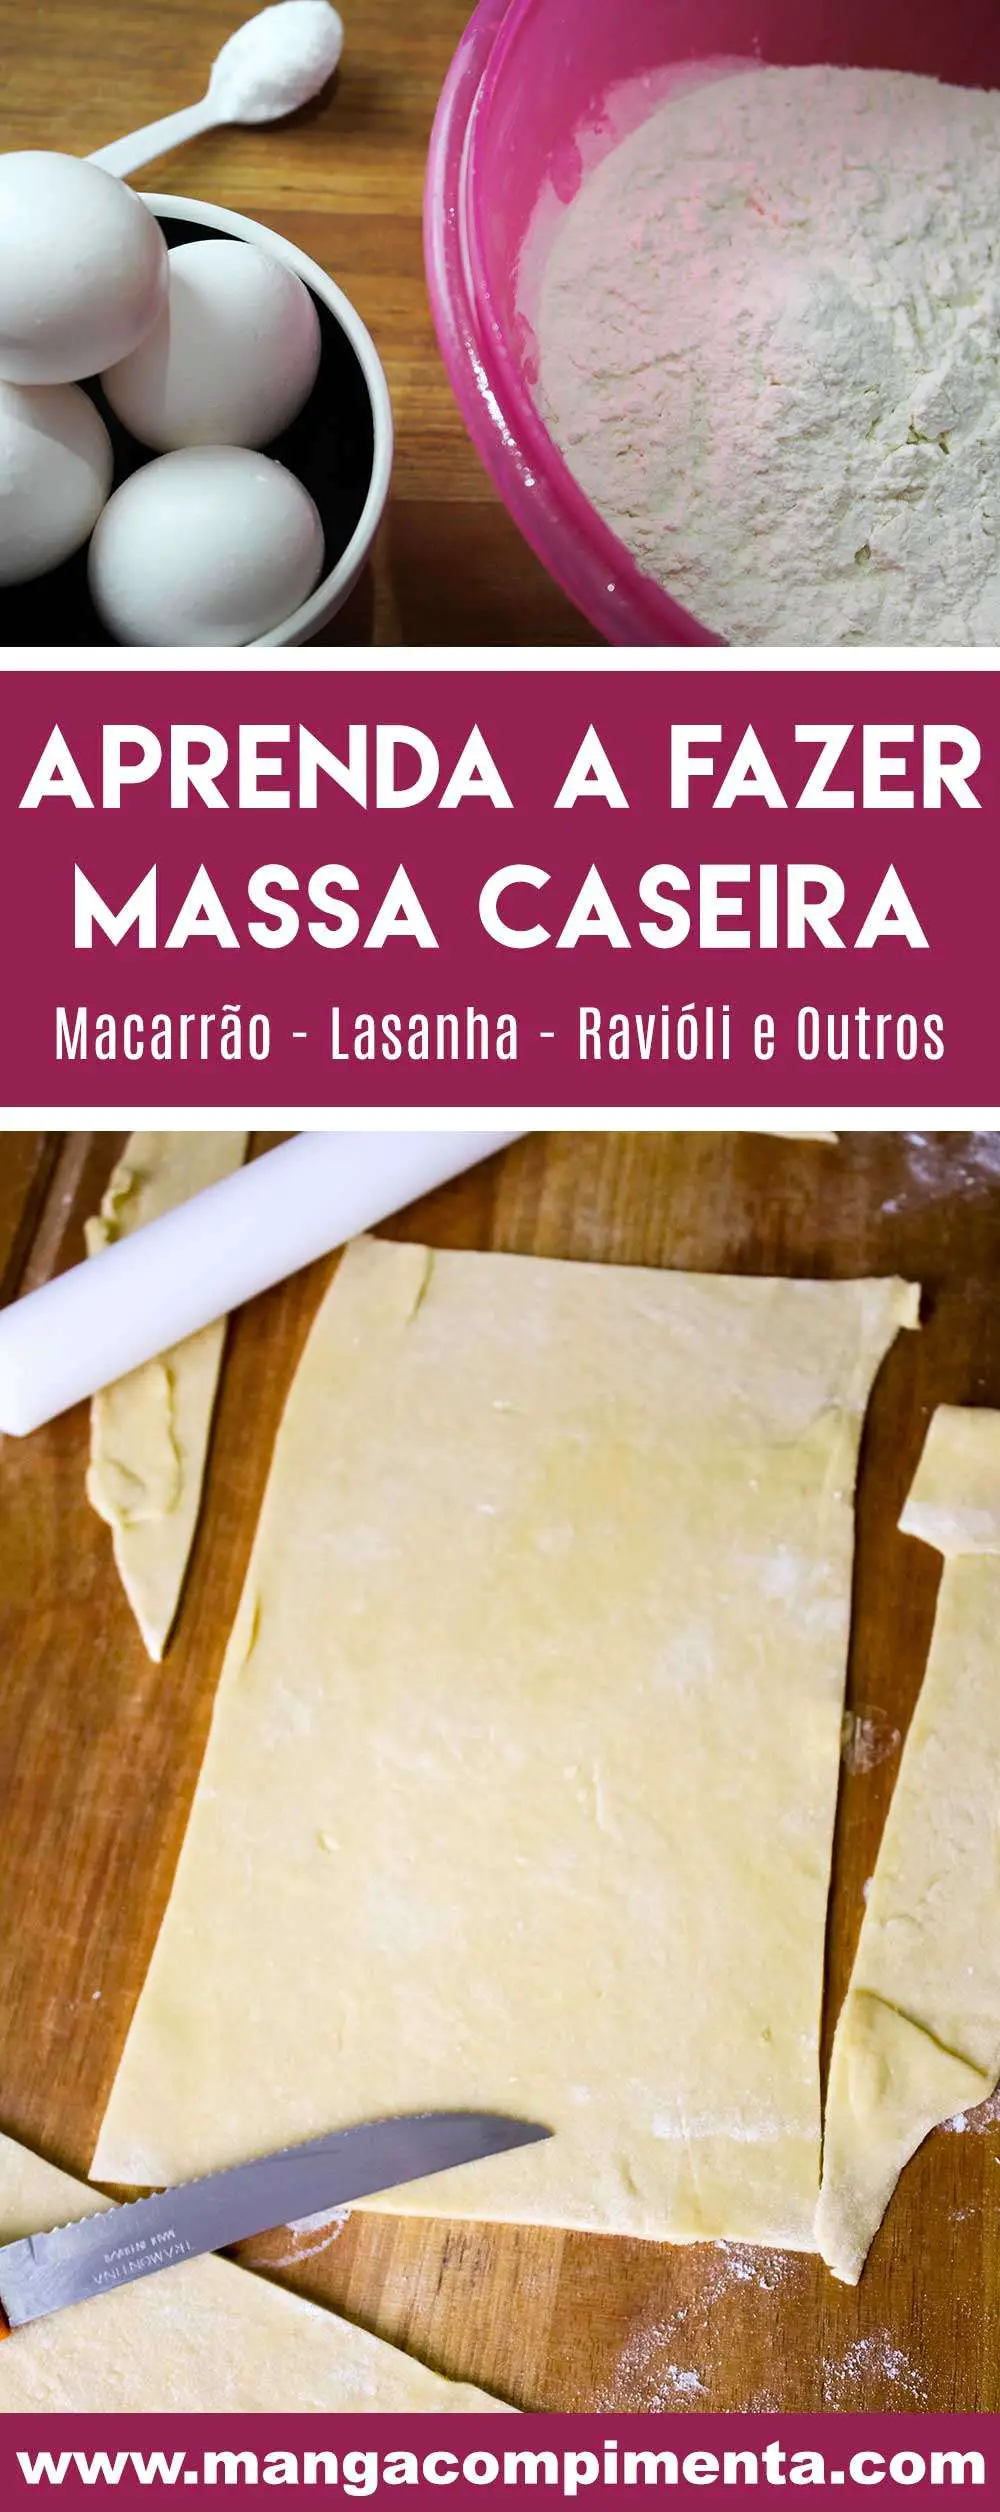 Receita de Massa Caseira - prepare em casa Macarrão, Lasanha, Ravióli, entre outros!